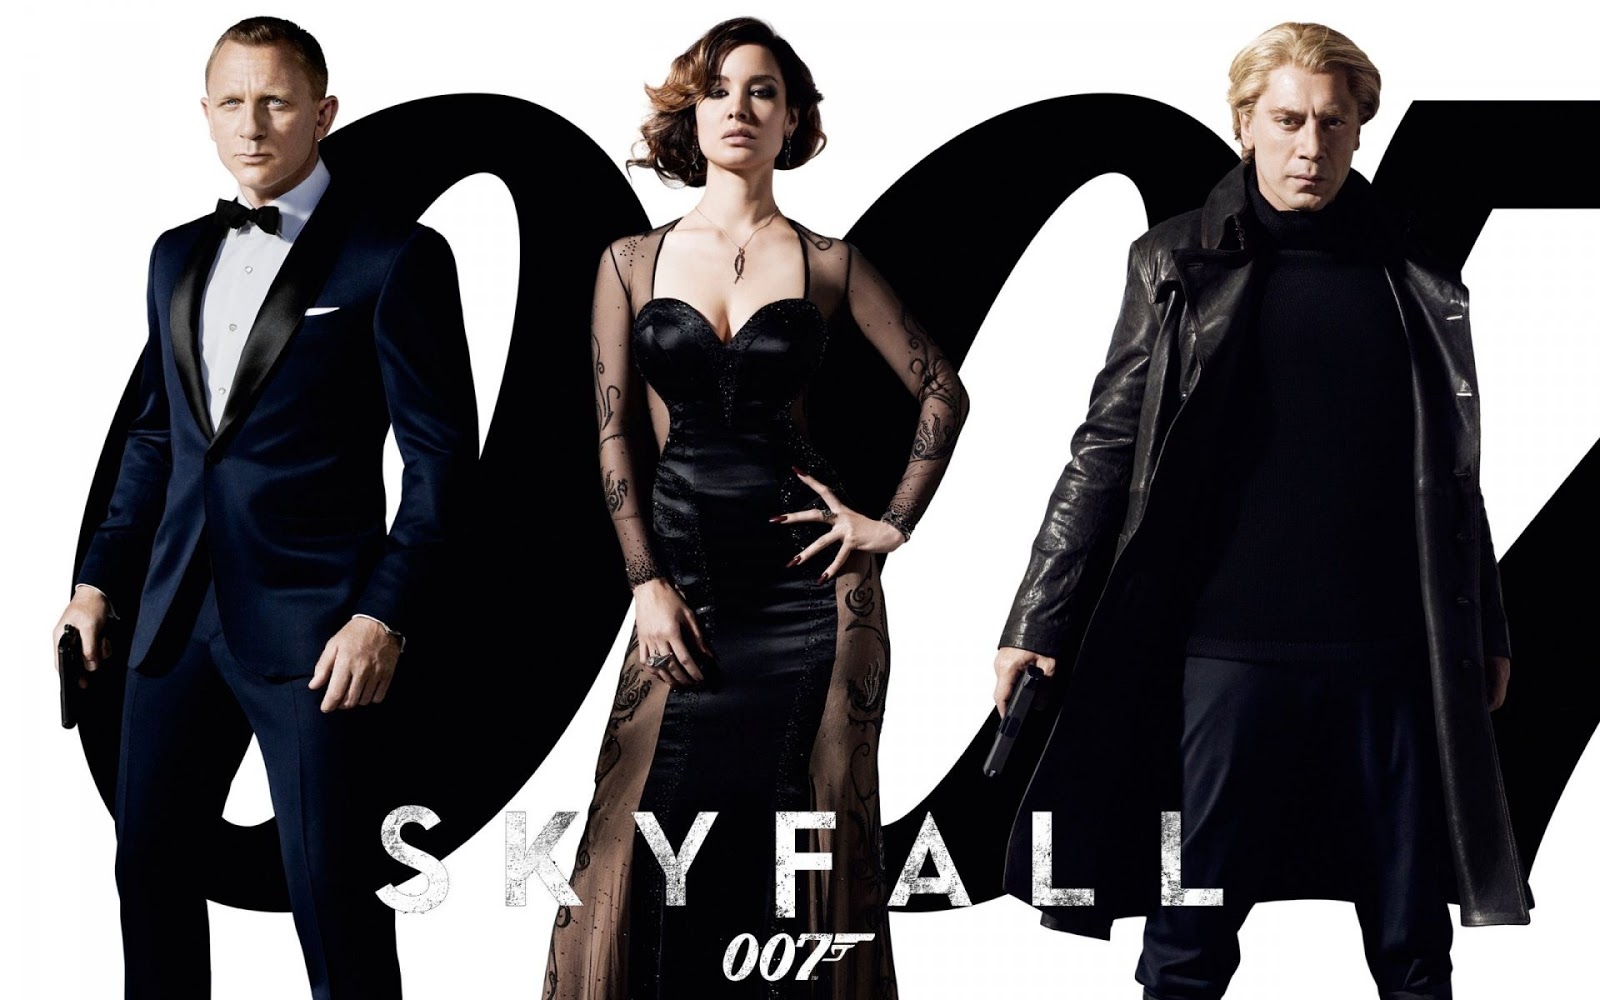 007壁紙,ファッション,フォーマルウェア,ゴシックファッション,小さな黒いドレス,スーツ